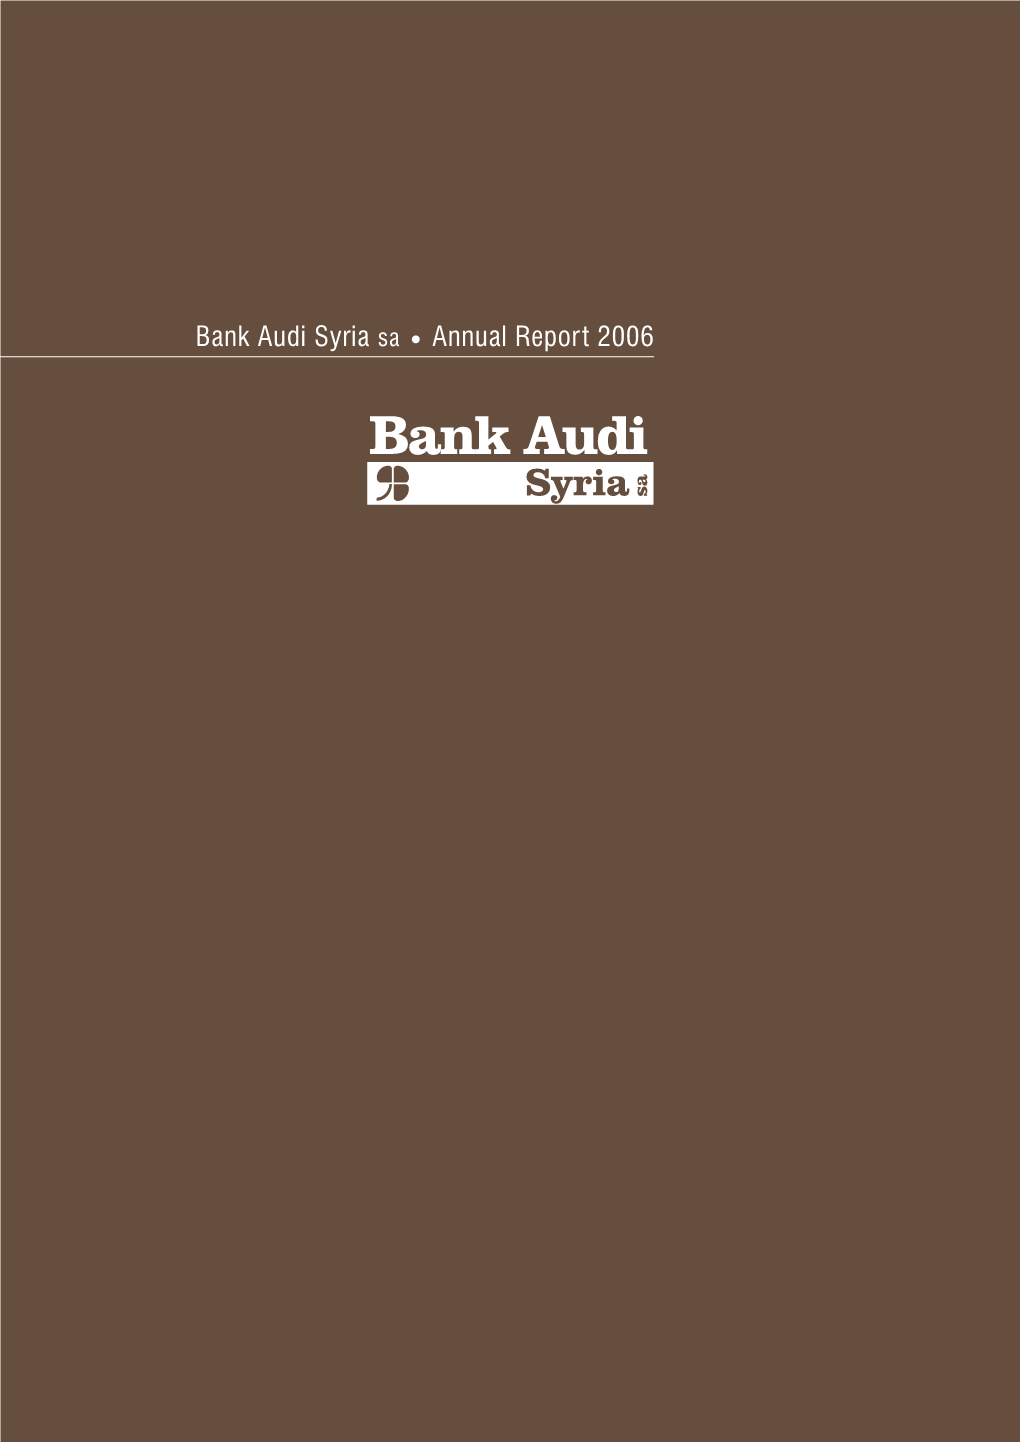 BANK AUDI SYRIA Sa FINANCIAL STATEMENTS